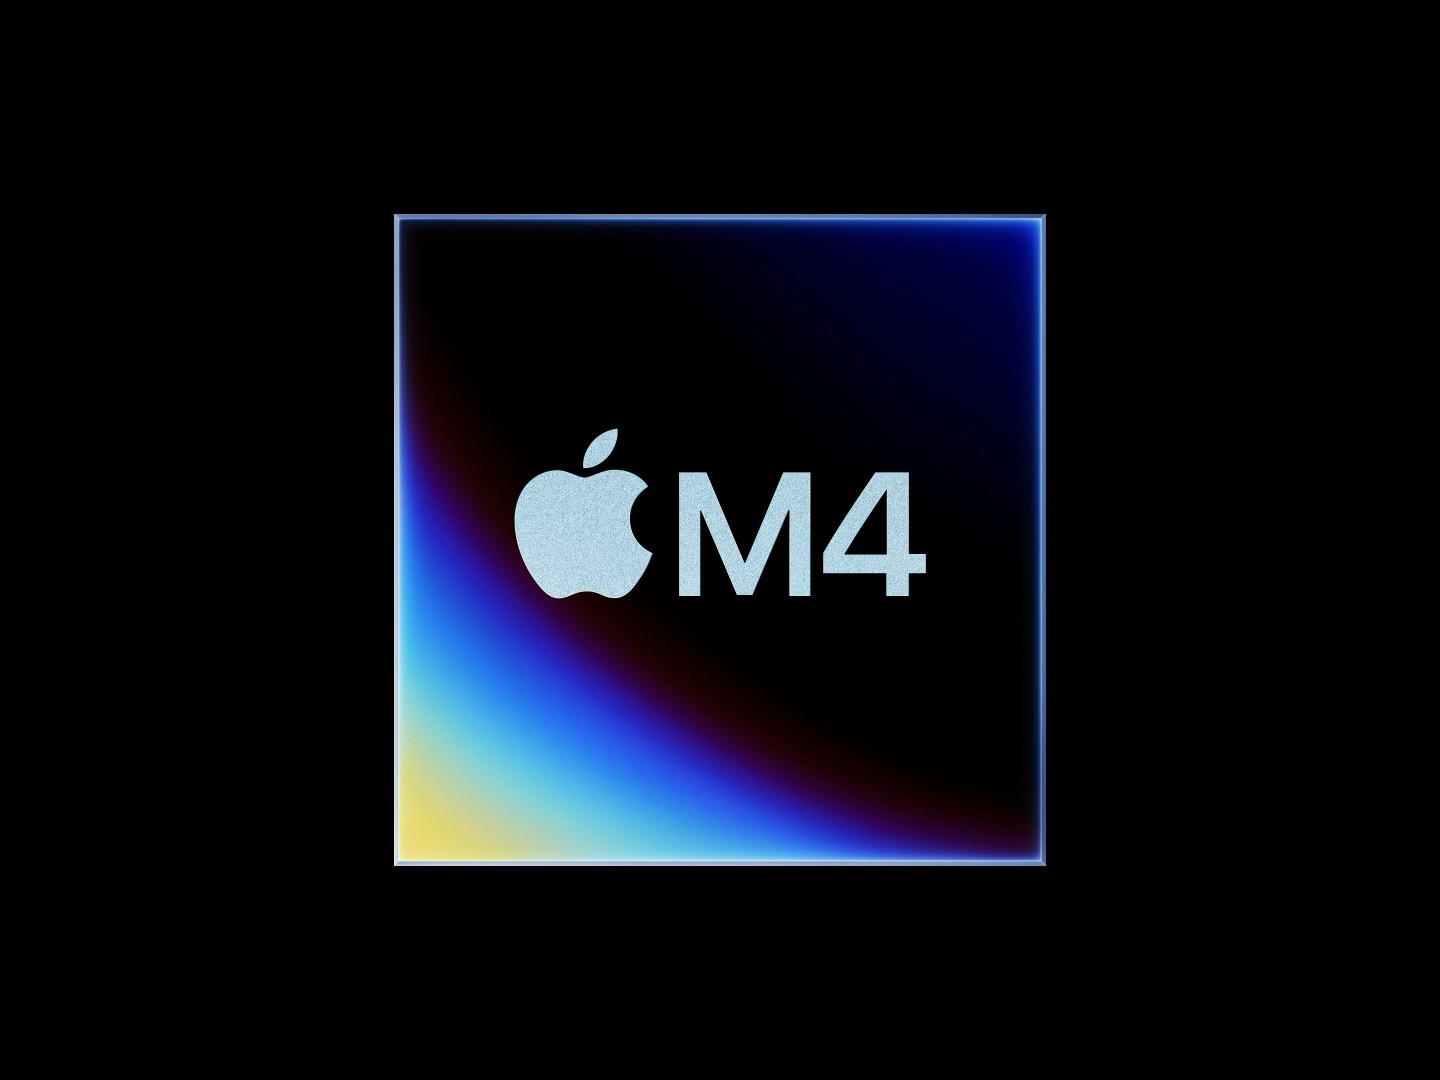 苹果新款M4：搭载四个Thunderbolt控制器，高带宽带来更强连接性能